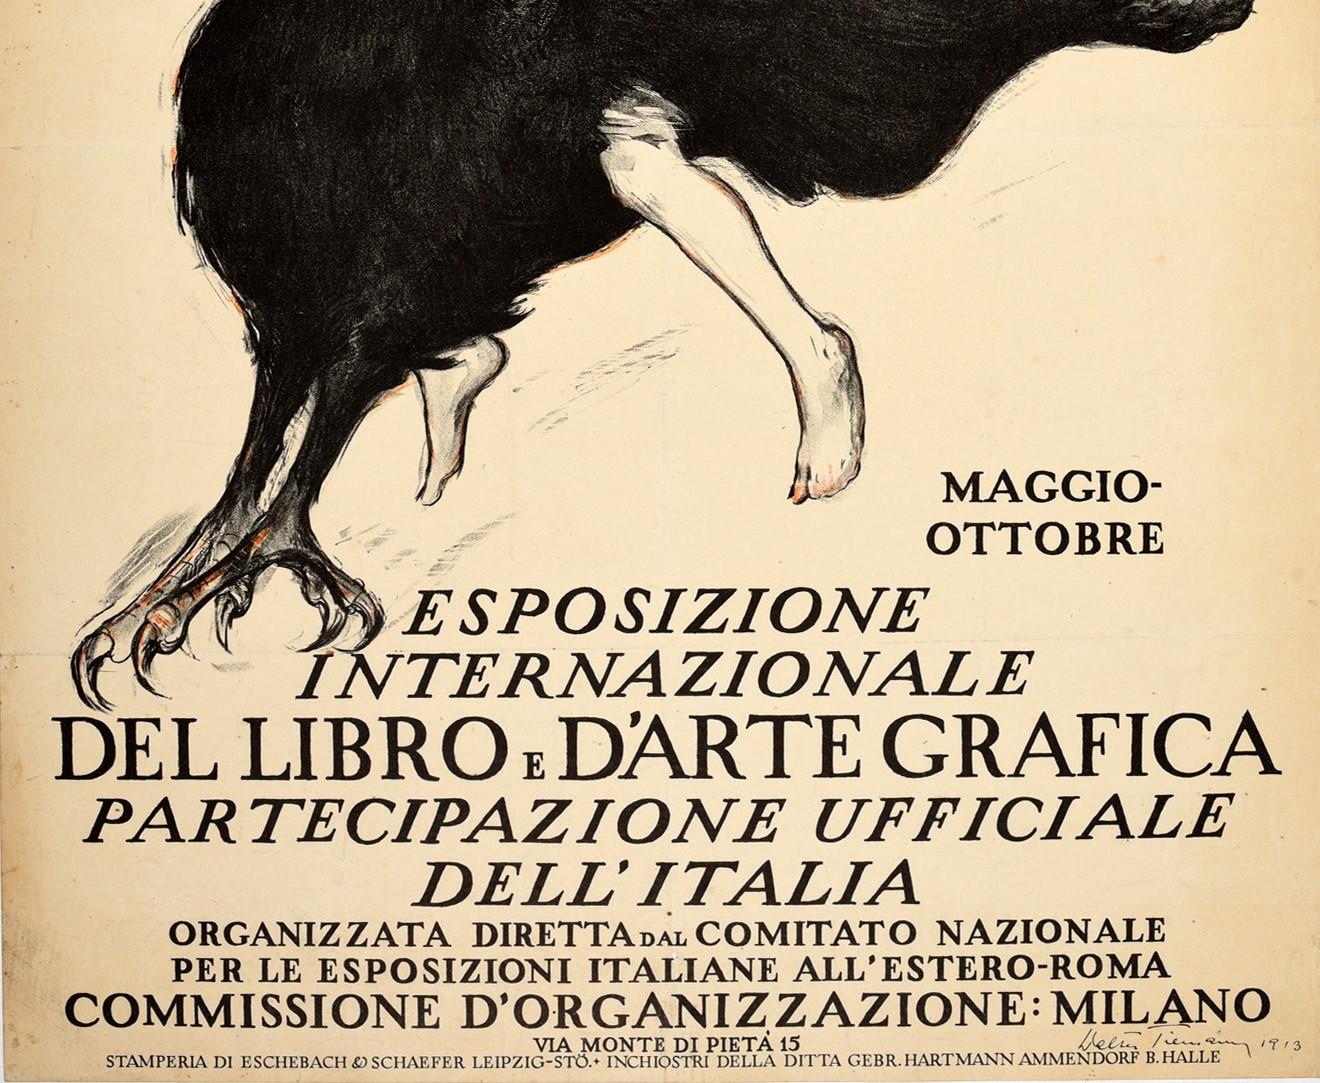 Italian Original Antique Advertising Poster Lipsia Book & Graphic Art Exhibition Griffin